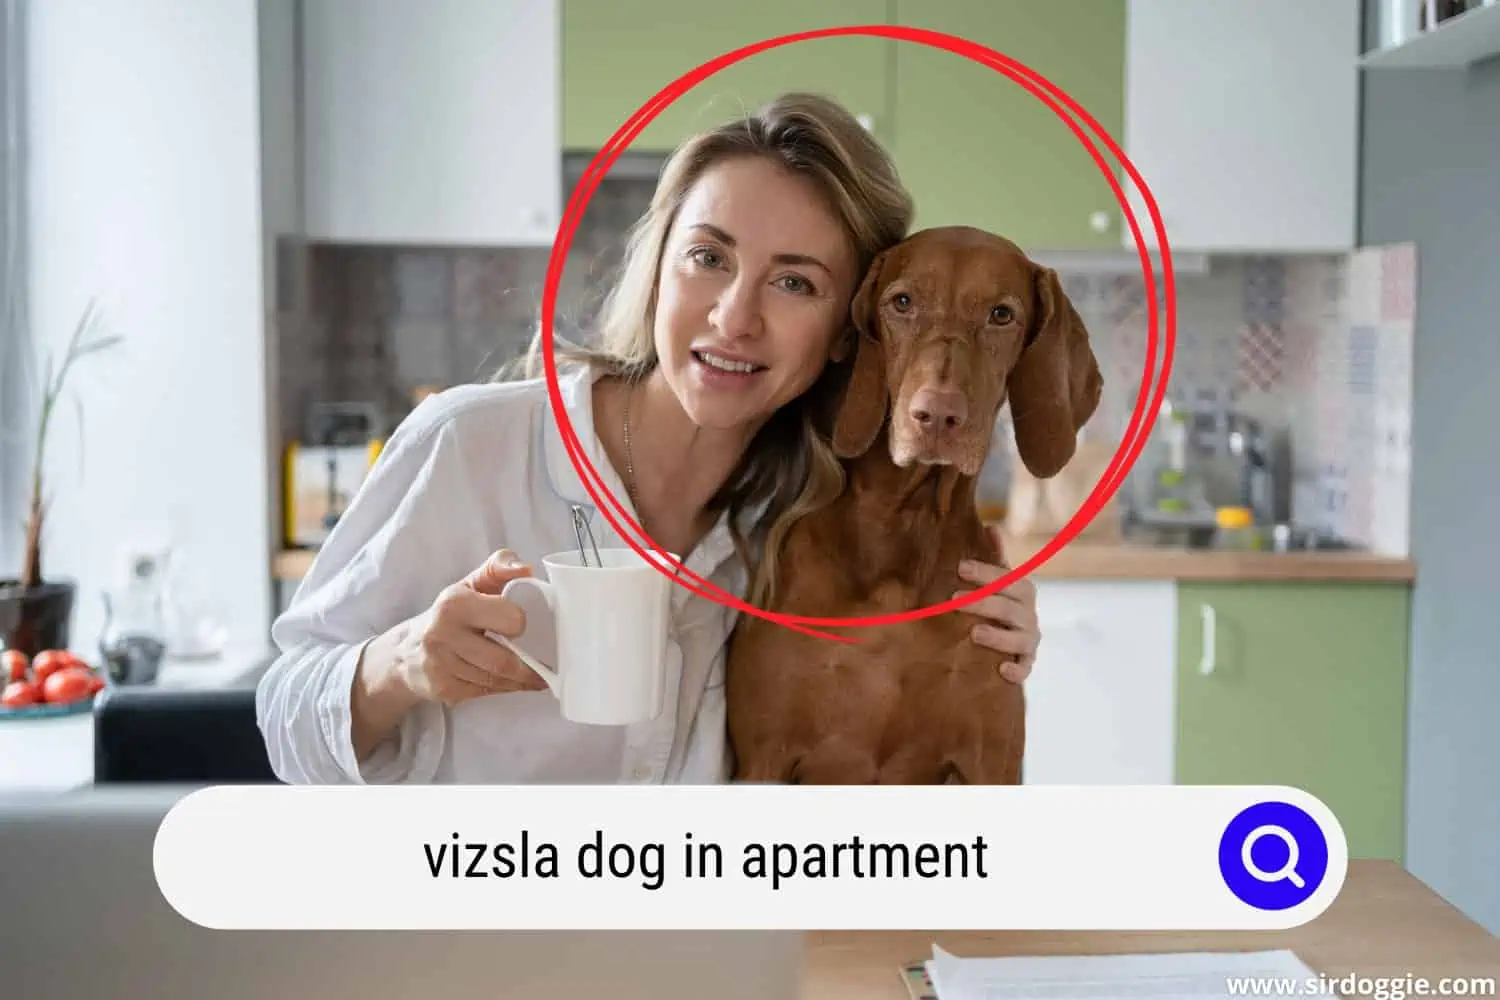 Owner together with Vizsla dog inside the apartment